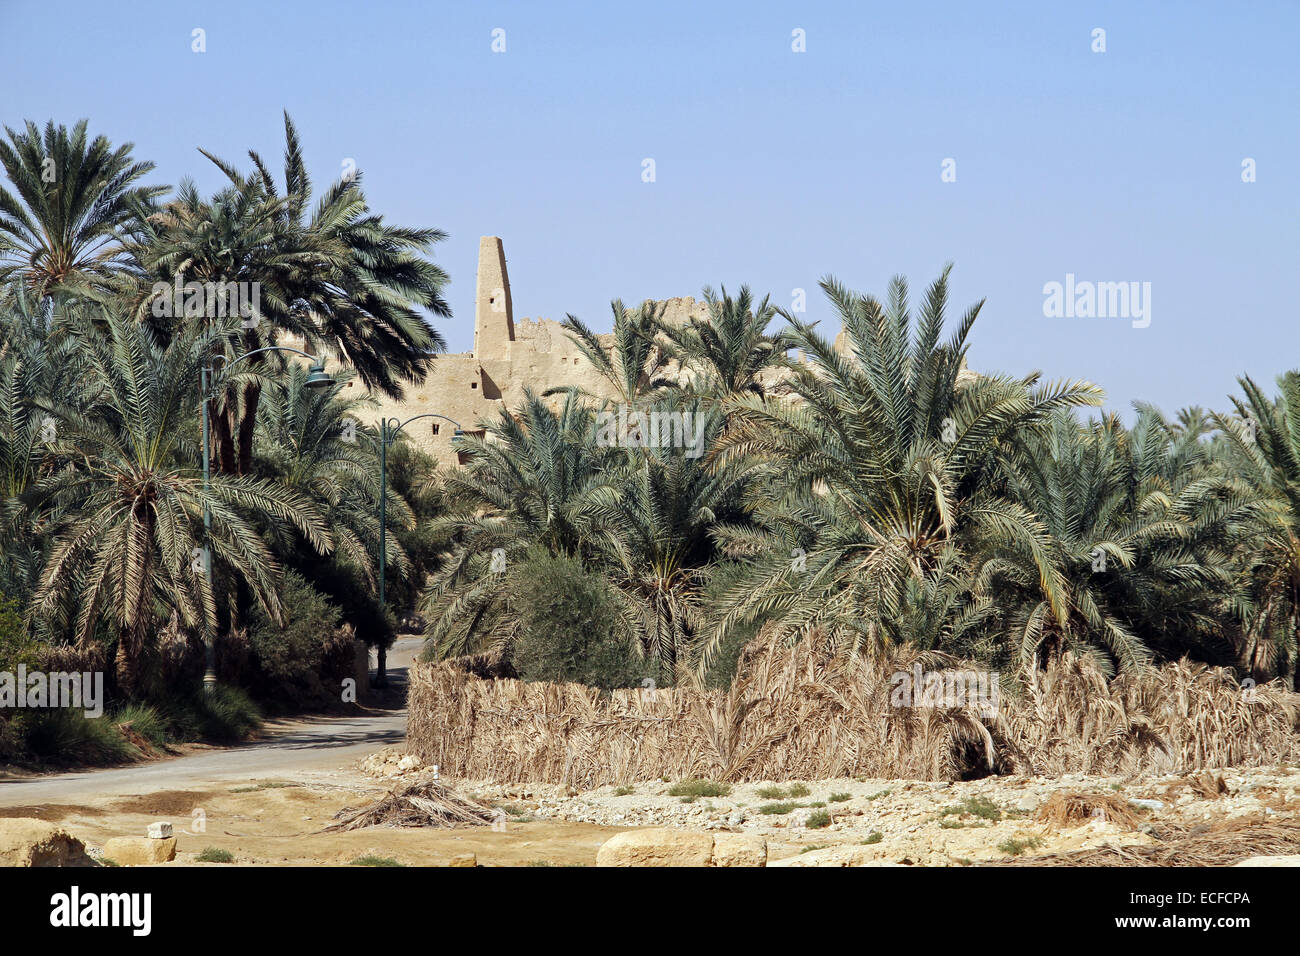 Le Temple de l'Oracle (aussi connu comme le Temple d'Amon) se lève sur les palmiers dans le village d'Aghurmi à Siwa, Egypte Banque D'Images